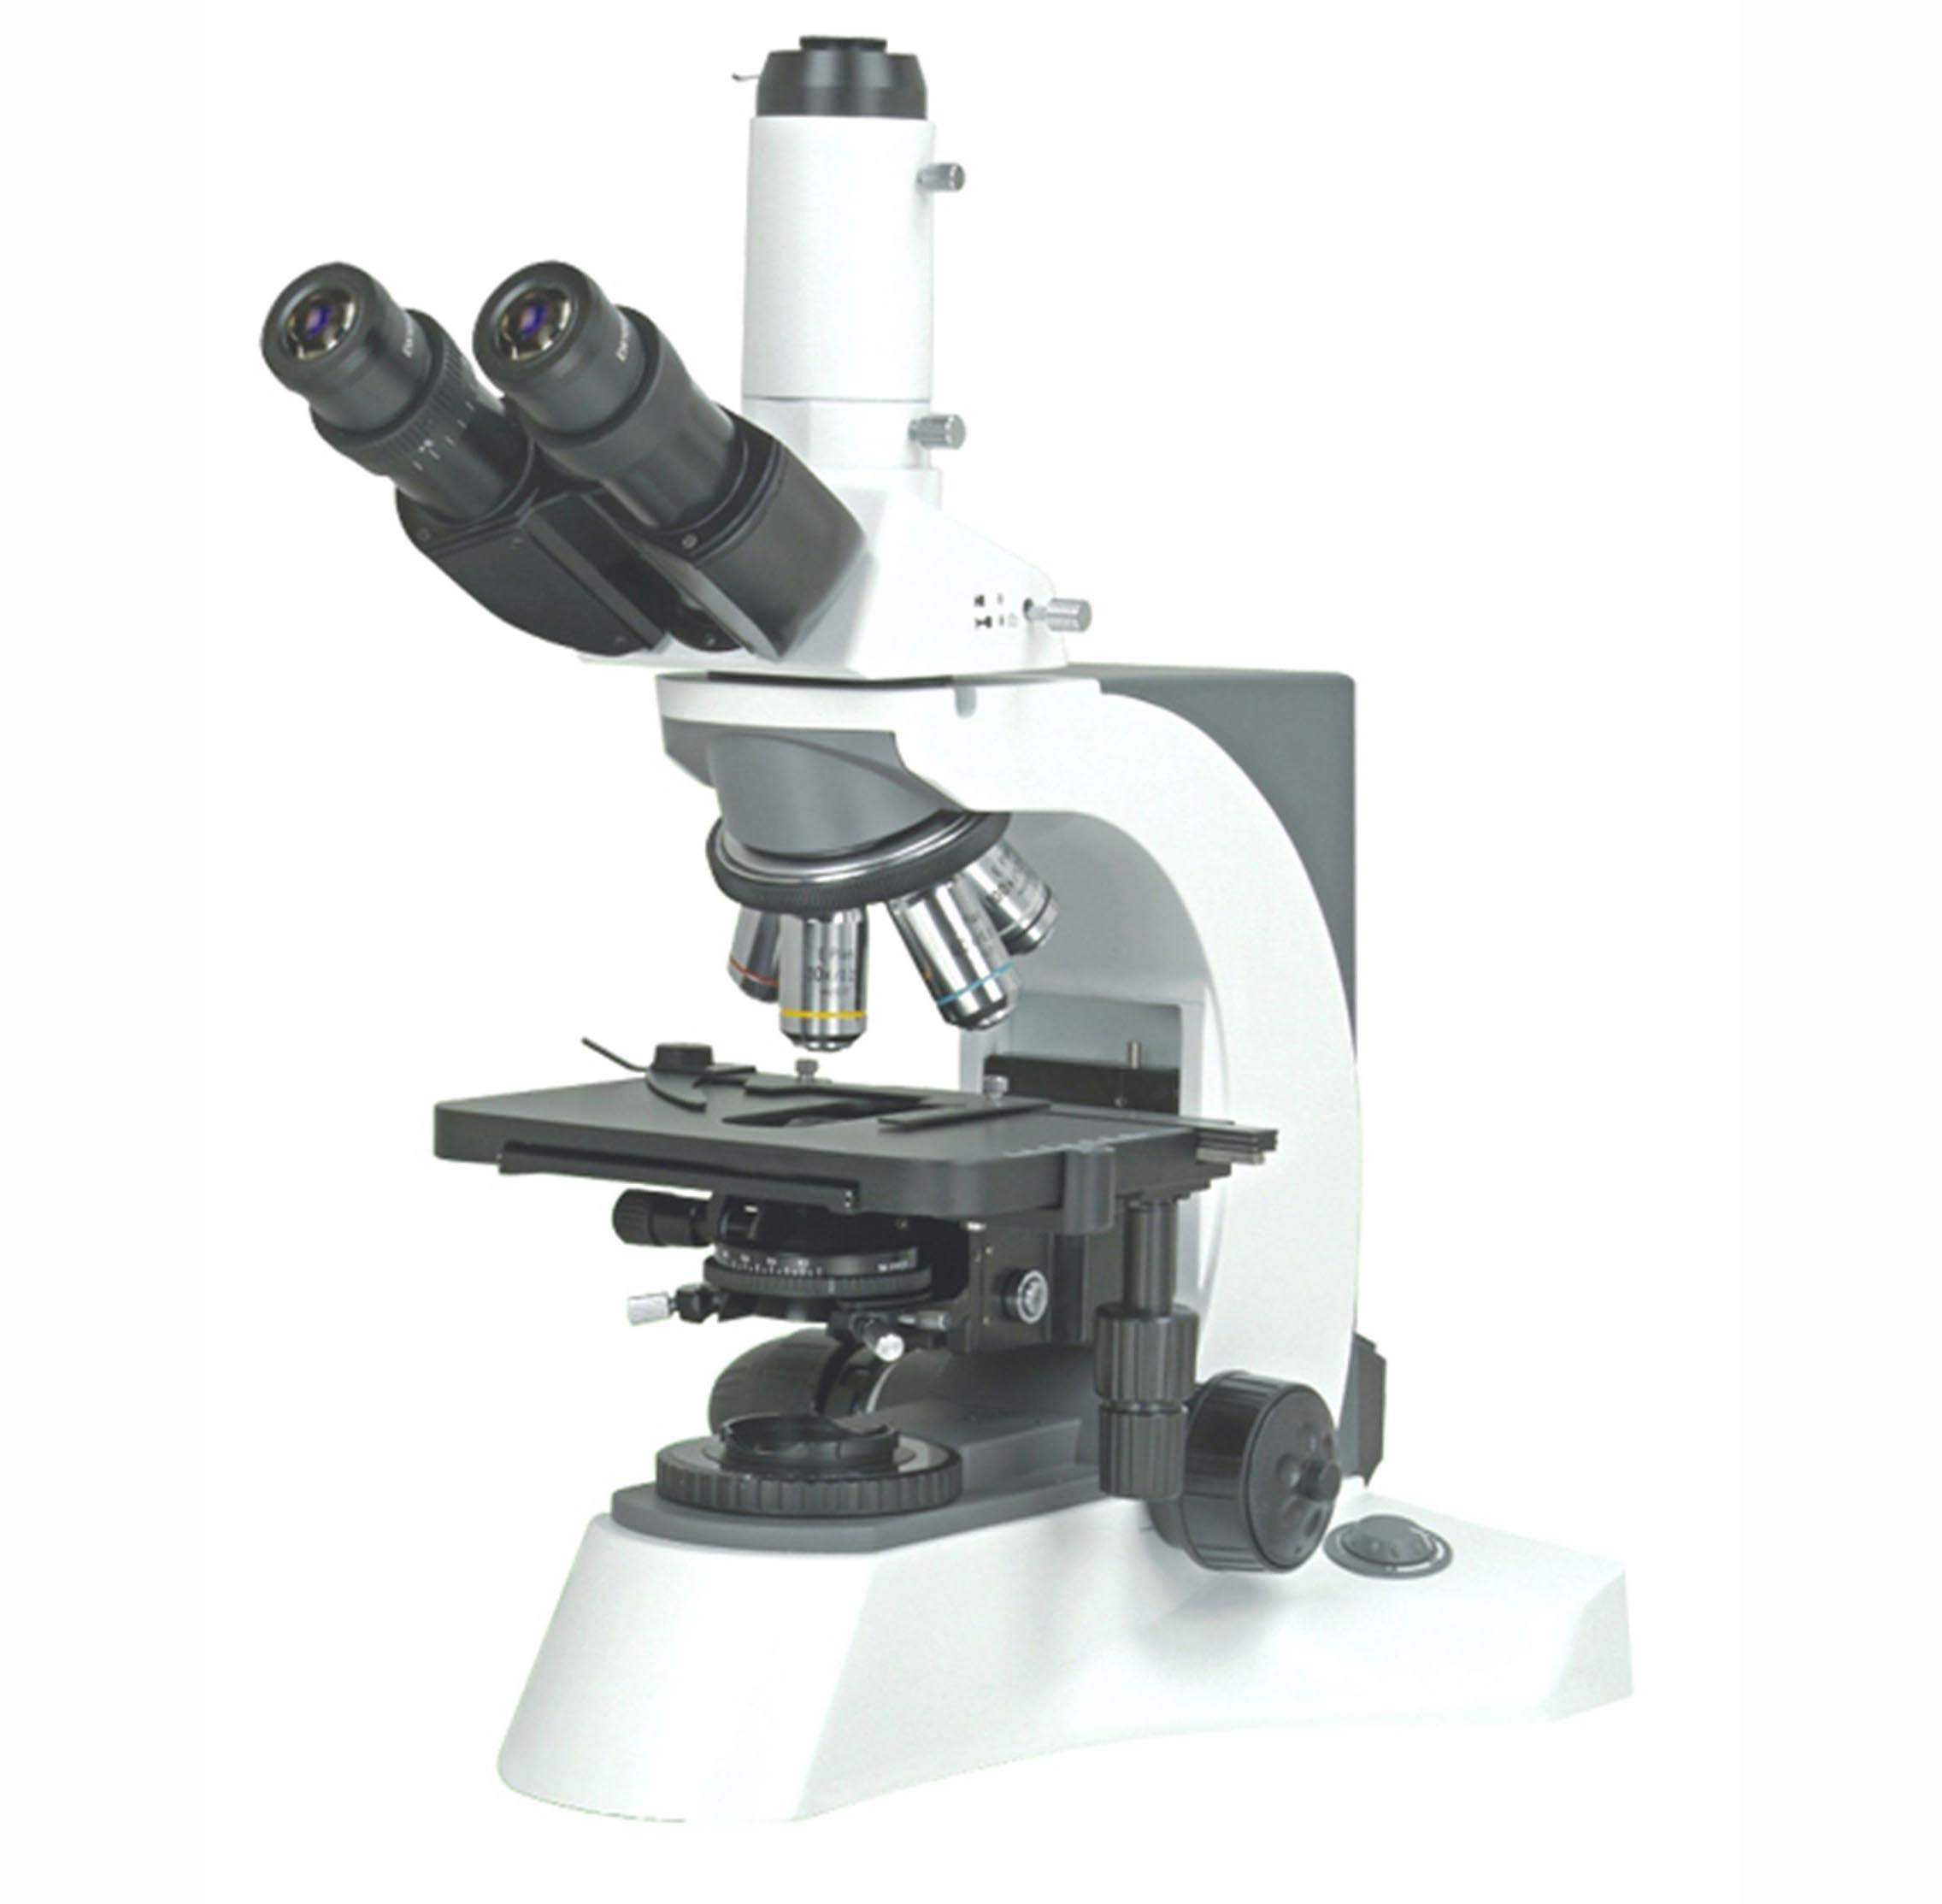 N—800M 显微镜 三目生物显微镜